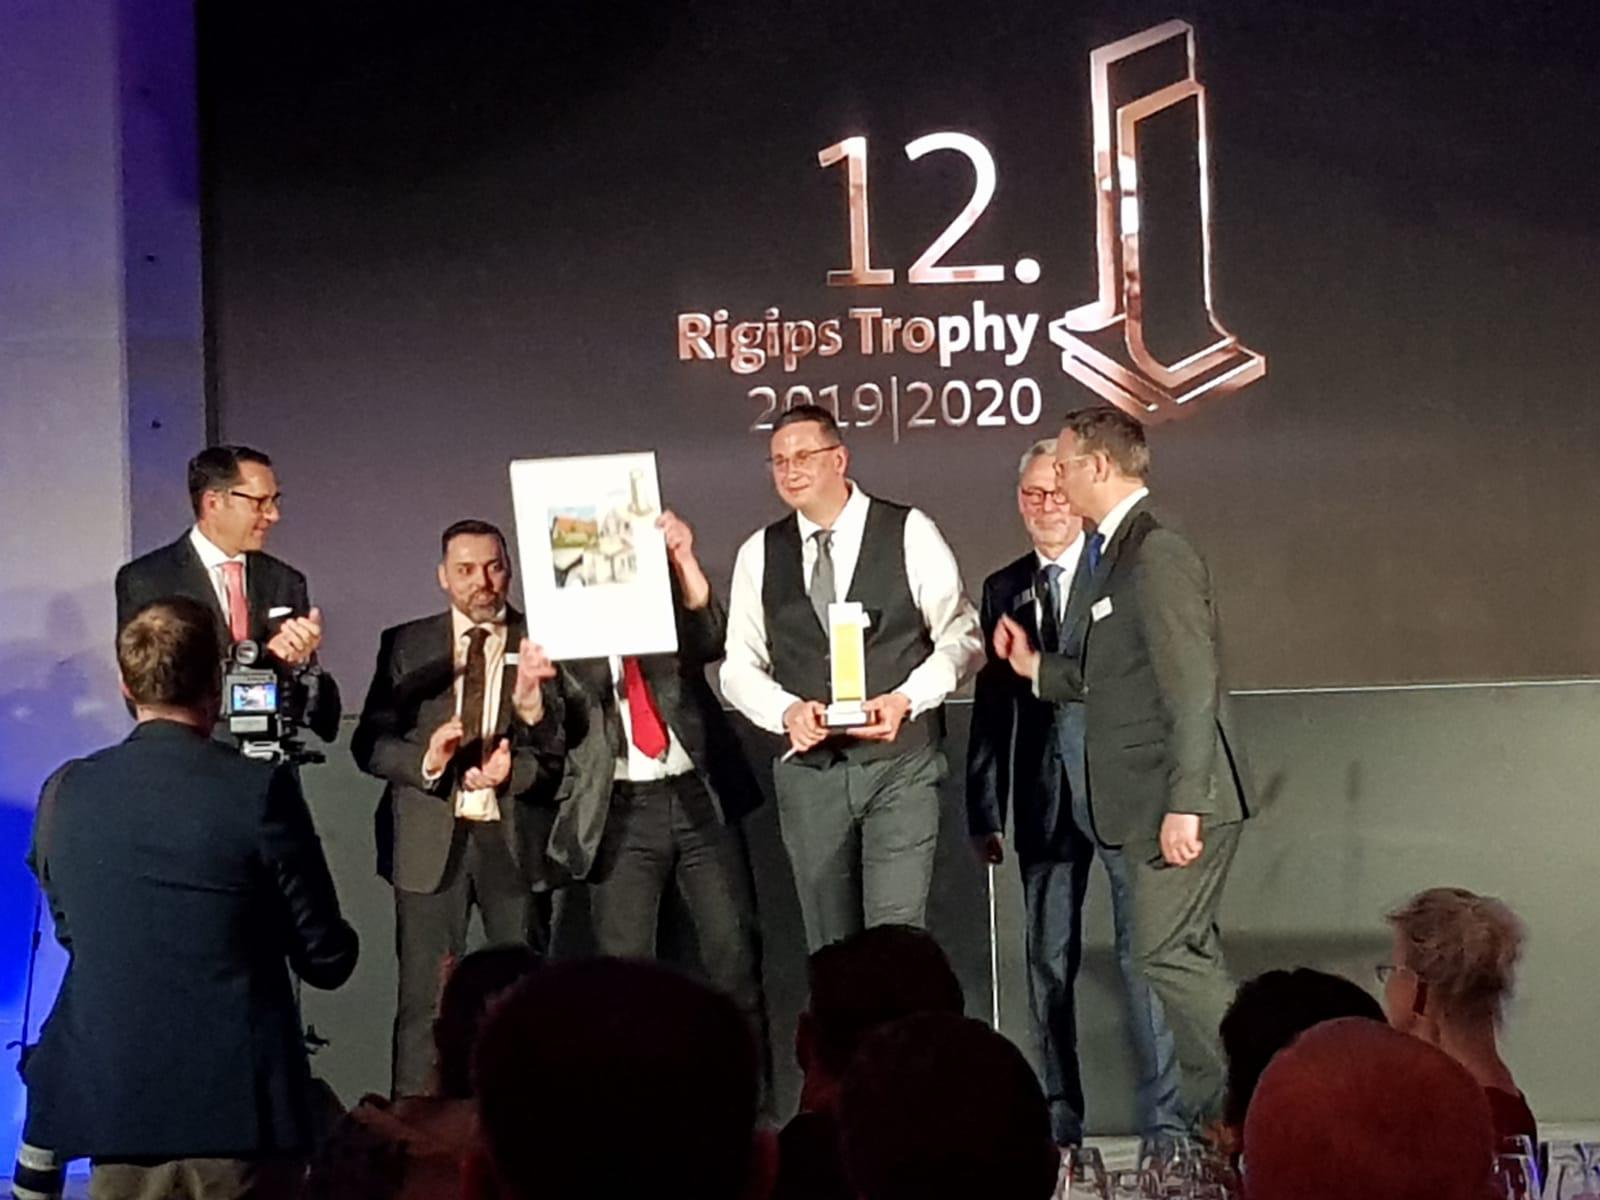 Rigips Trophy 2019/2020 - Die Preisverleihung